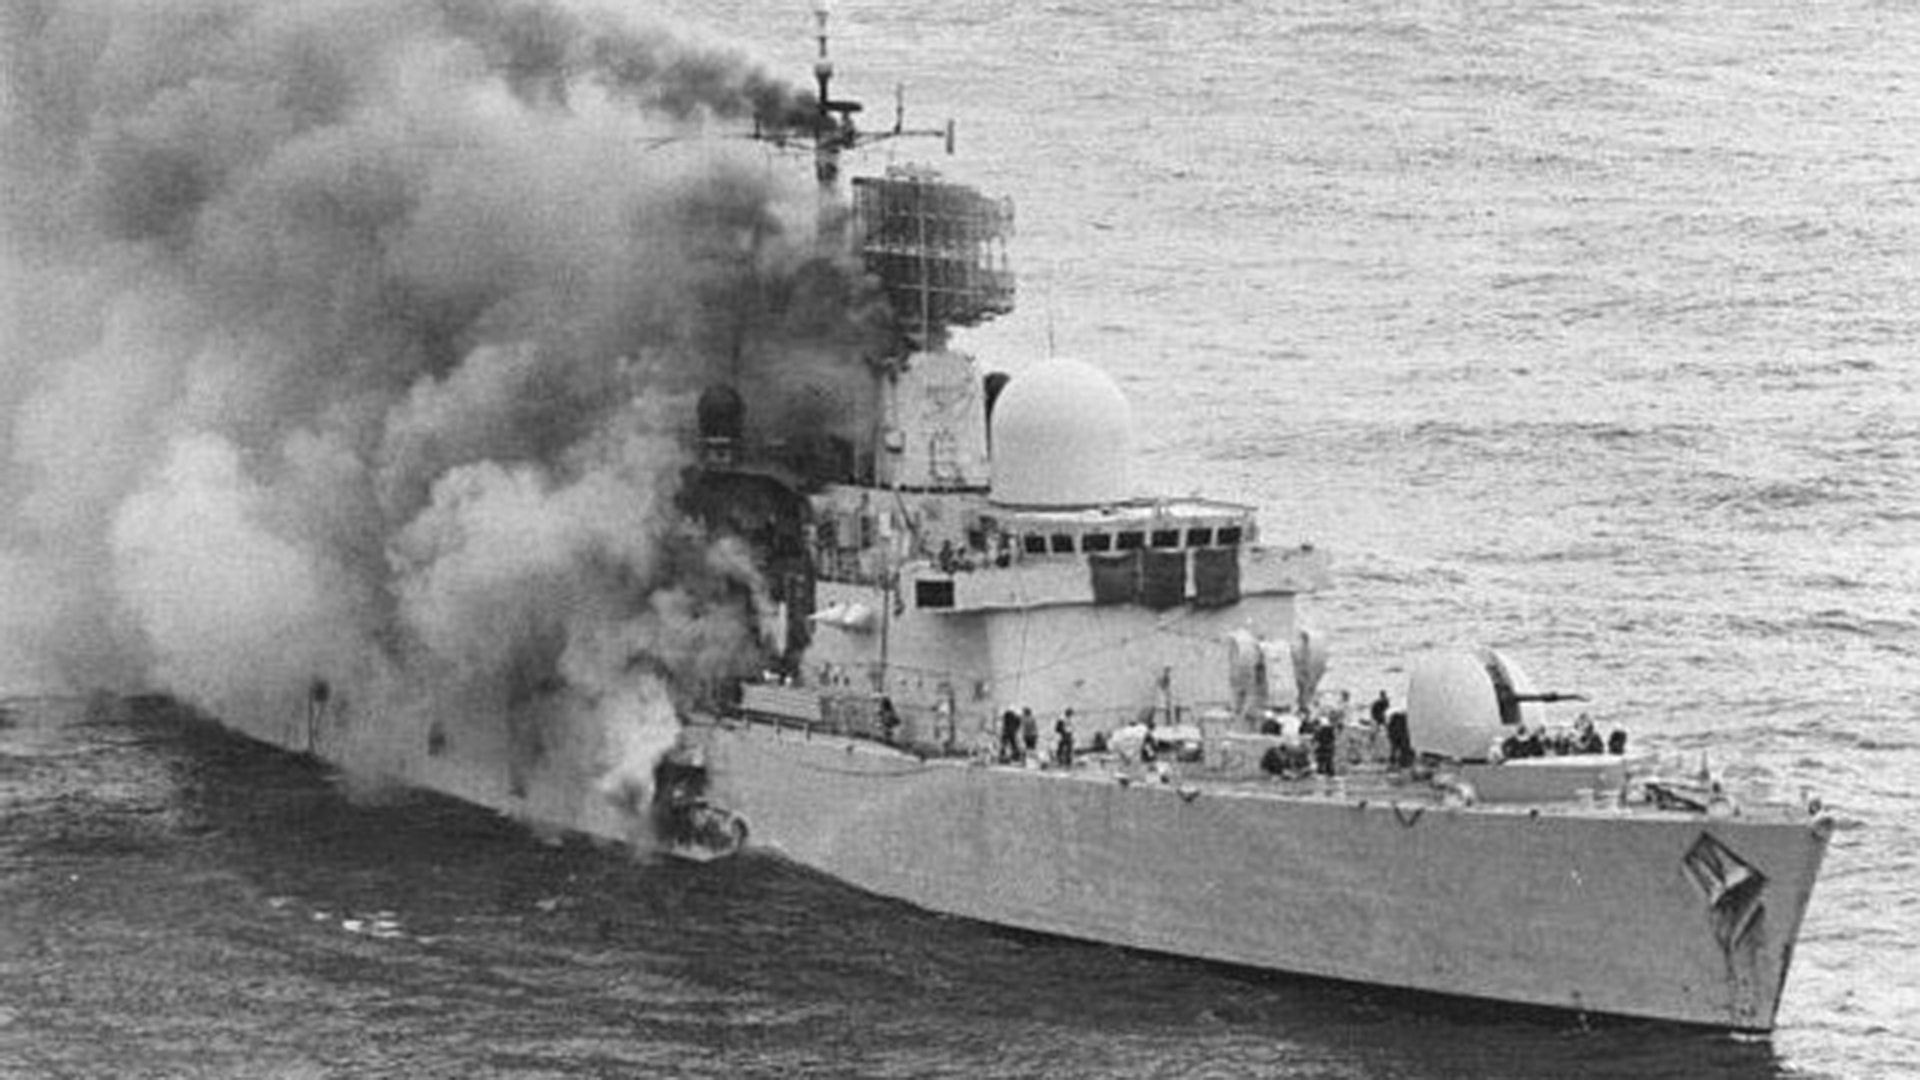 Hundimiento del Sheffield Guerra de Malvinas 4 de mayo 1982